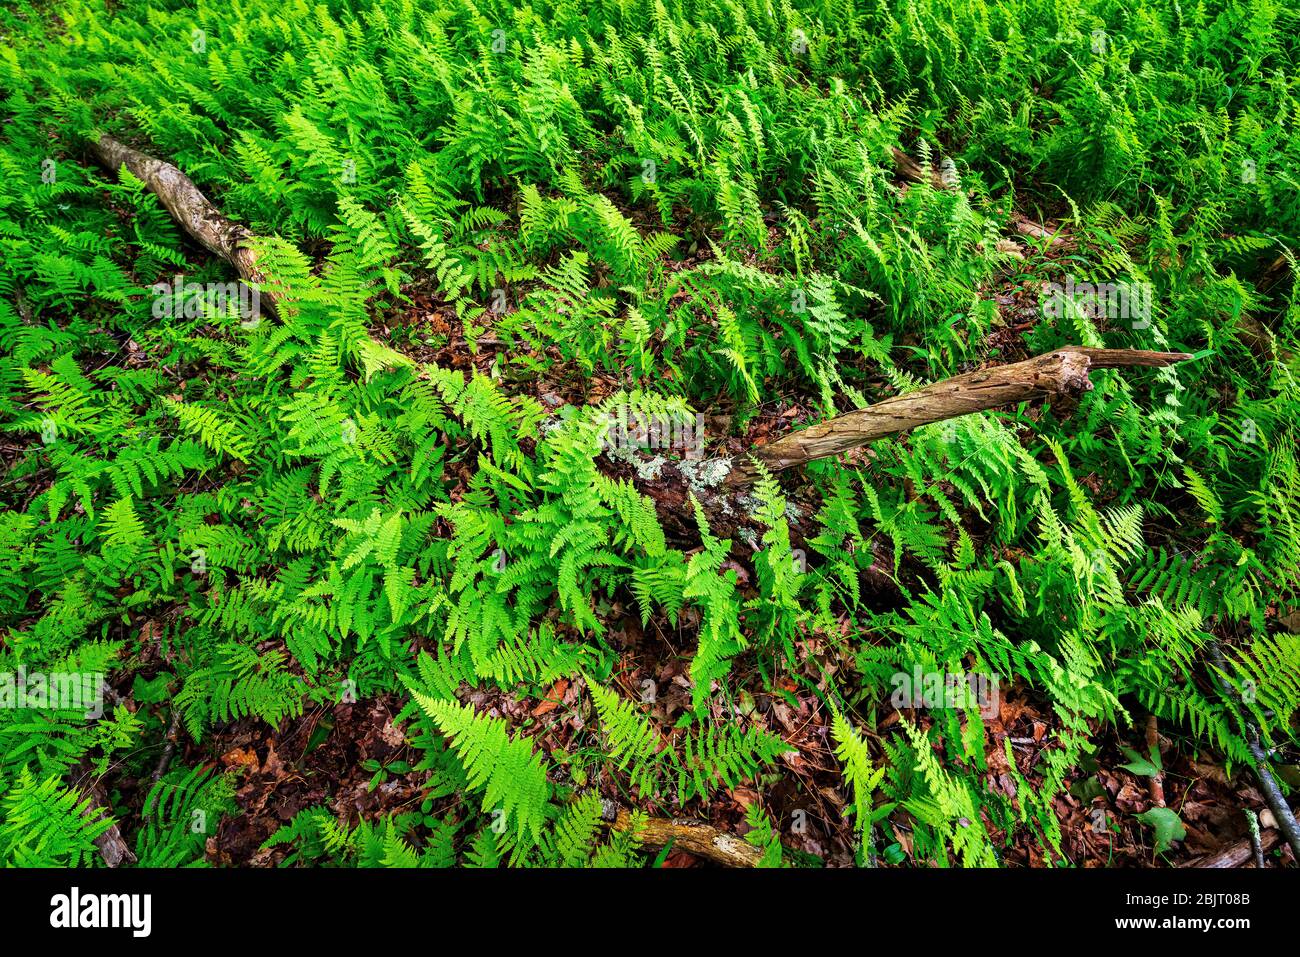 Des tapis verts luxuriants de fougères couvrent le sol forestier près de la rivière Blackwater dans la vallée de Canaan, en Virginie occidentale. Banque D'Images